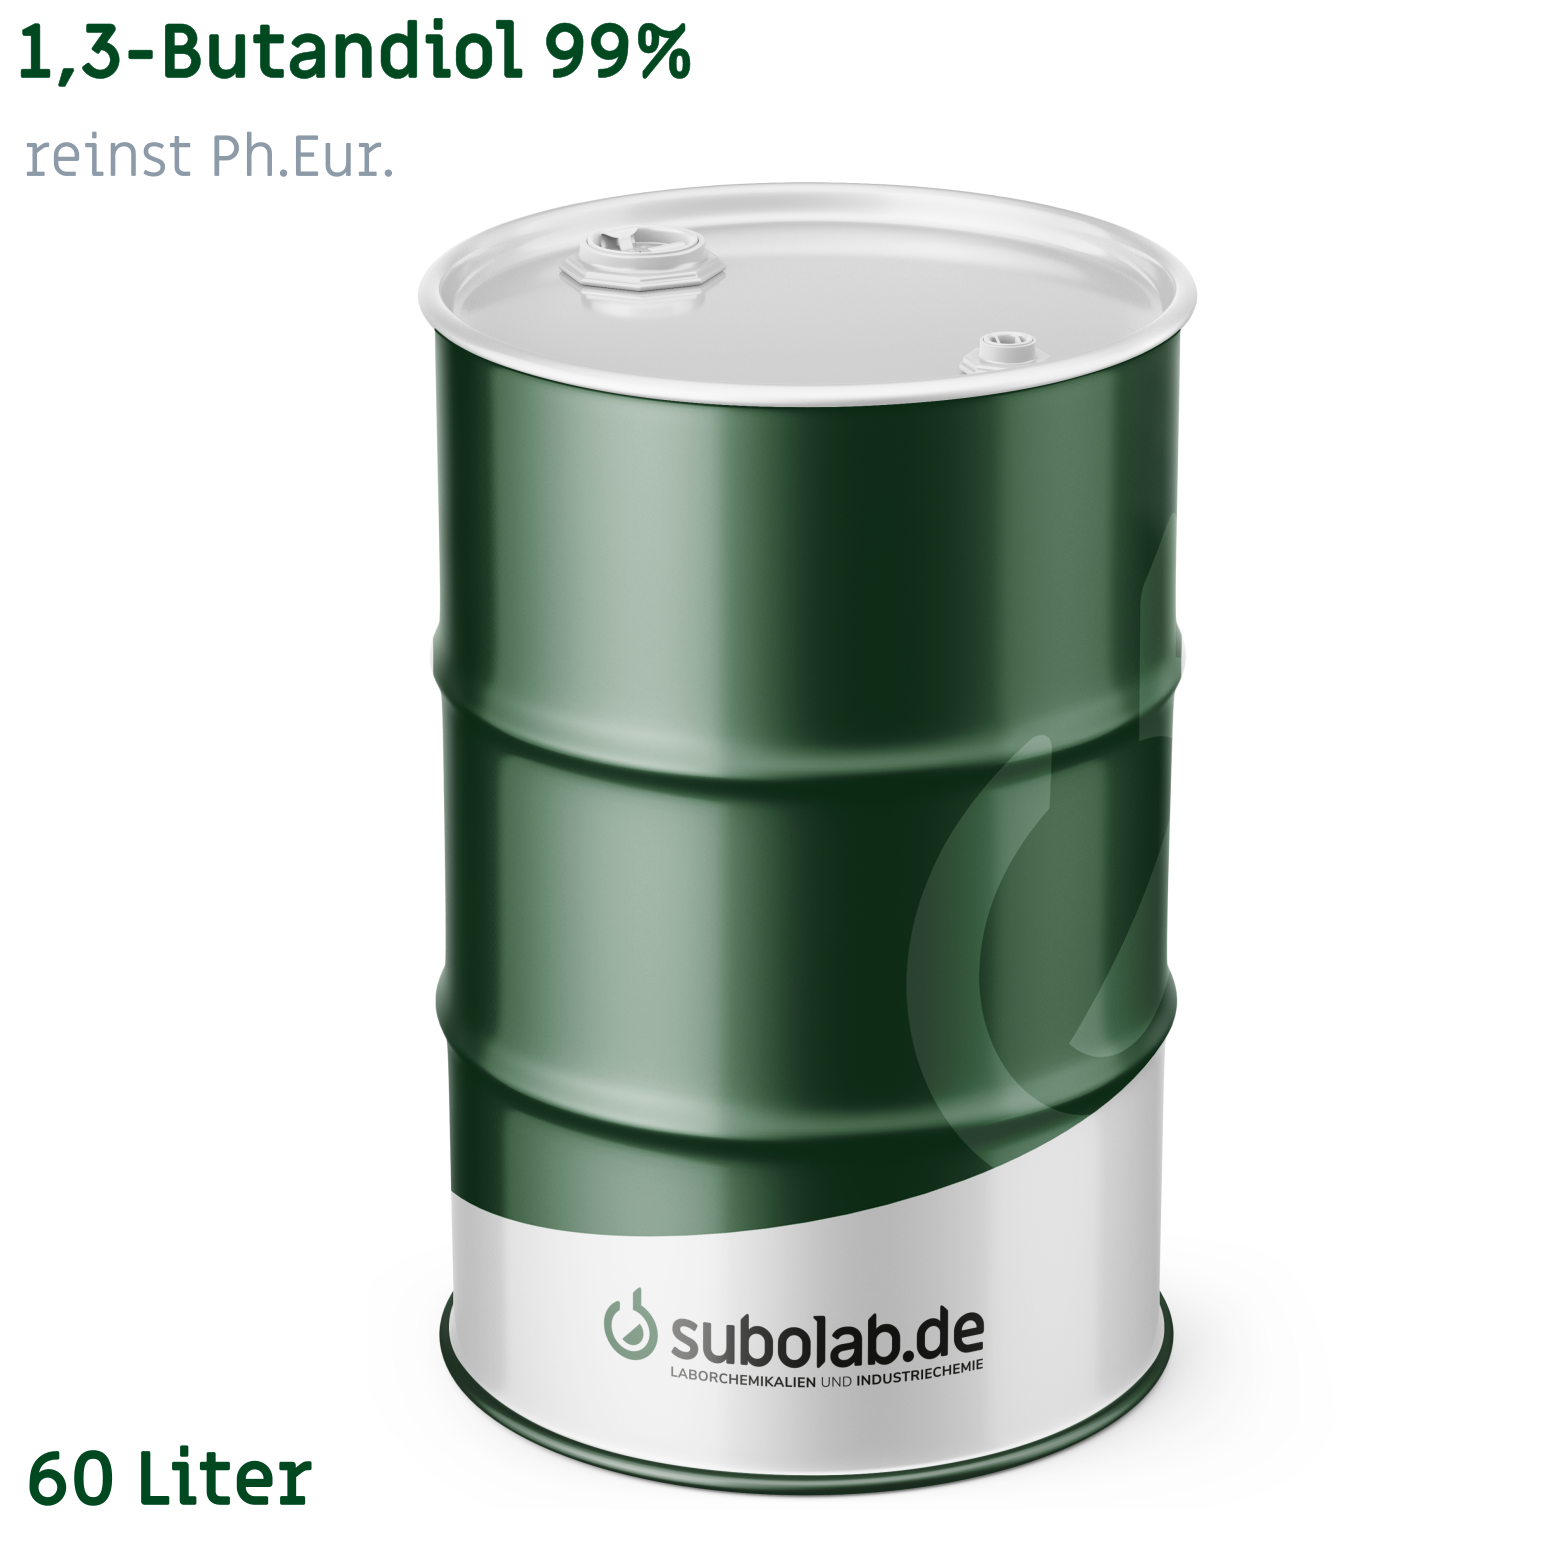 Bild von 1,3-Butandiol 99% reinst Ph.Eur. (60 Liter)